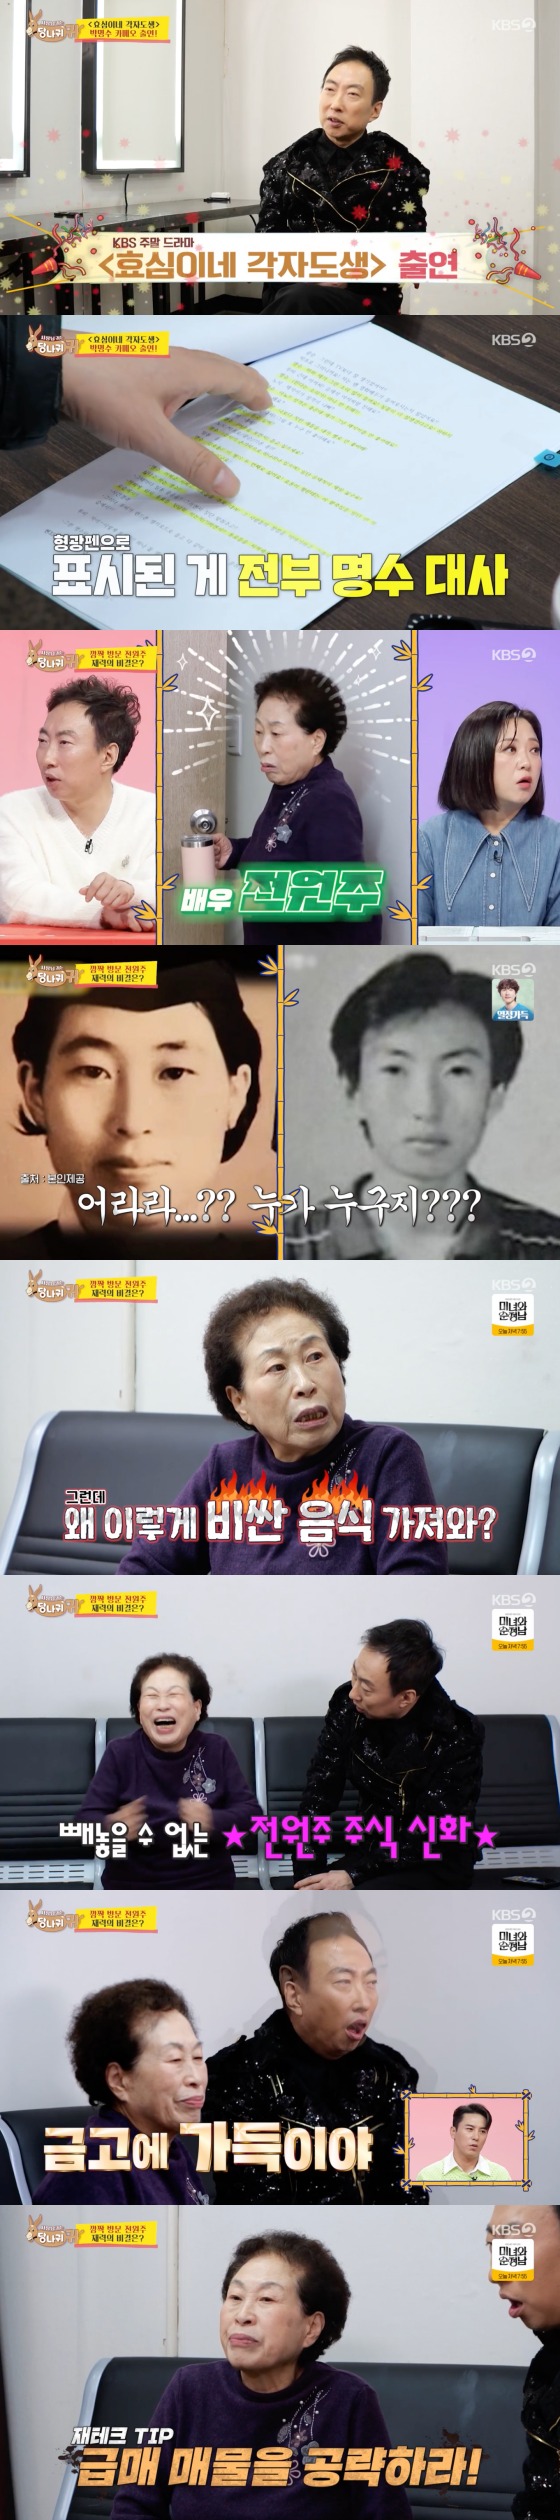 KBS 2TV '사장님 귀는 당나귀 귀'  방송 화면 캡처